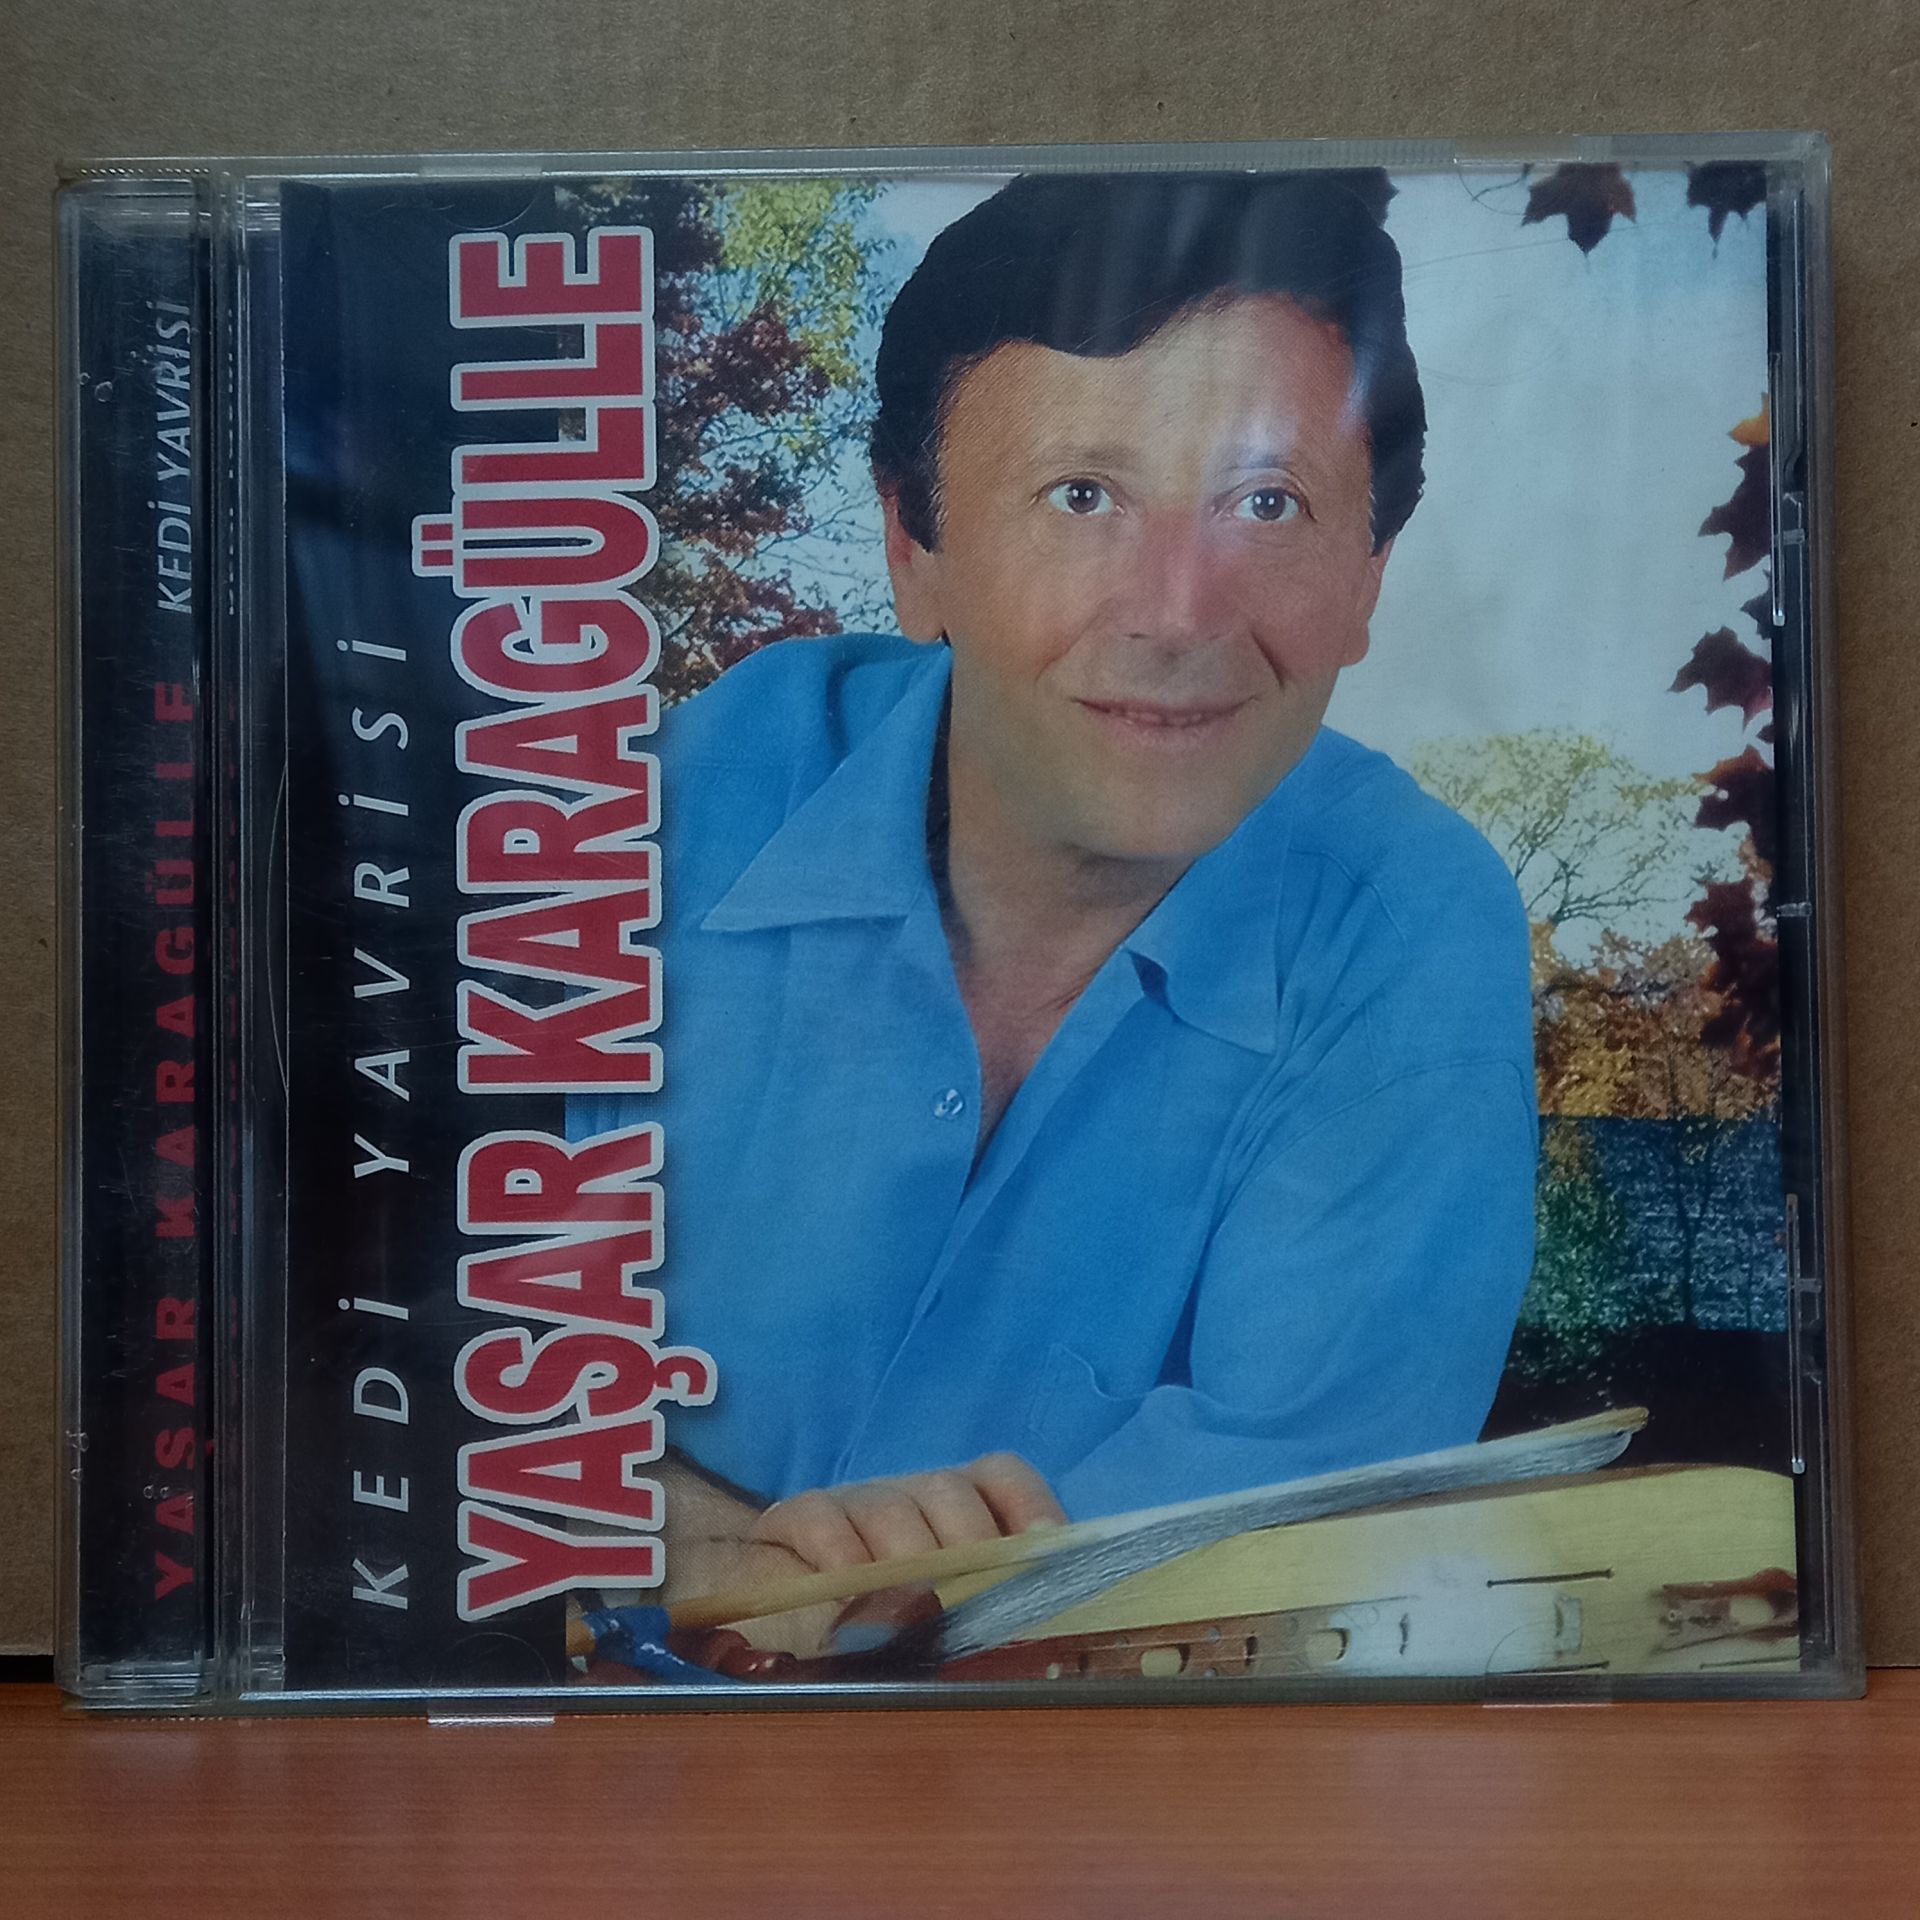 YAŞAR KARAGÜLLE - KEDİ YAVRİSİ - CD 2.EL